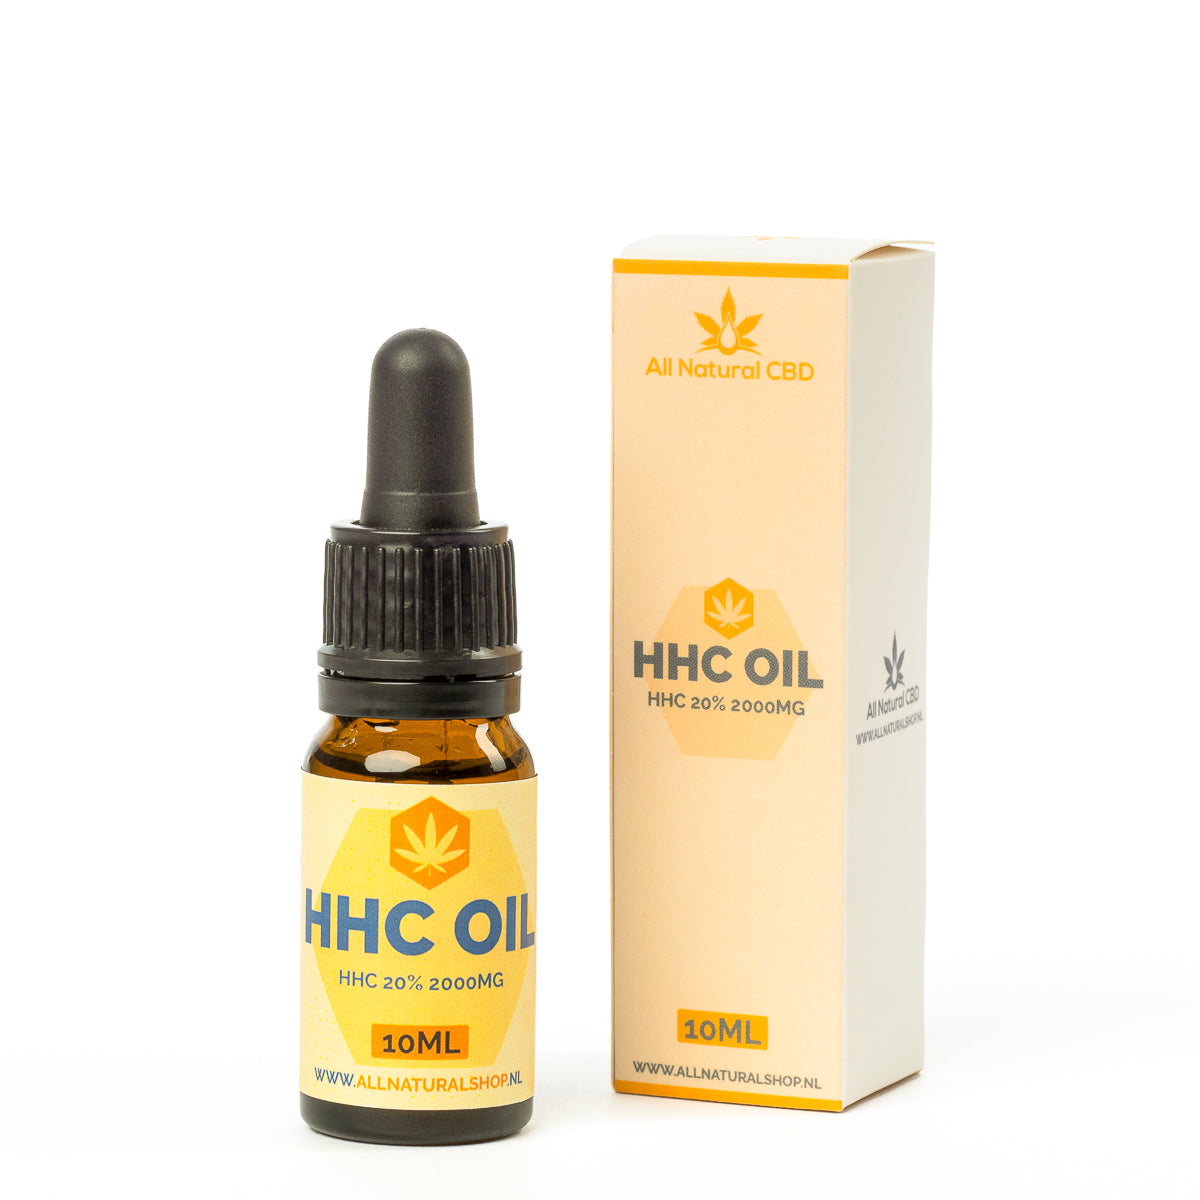 HHC oil 20% 2000mg (10ml)